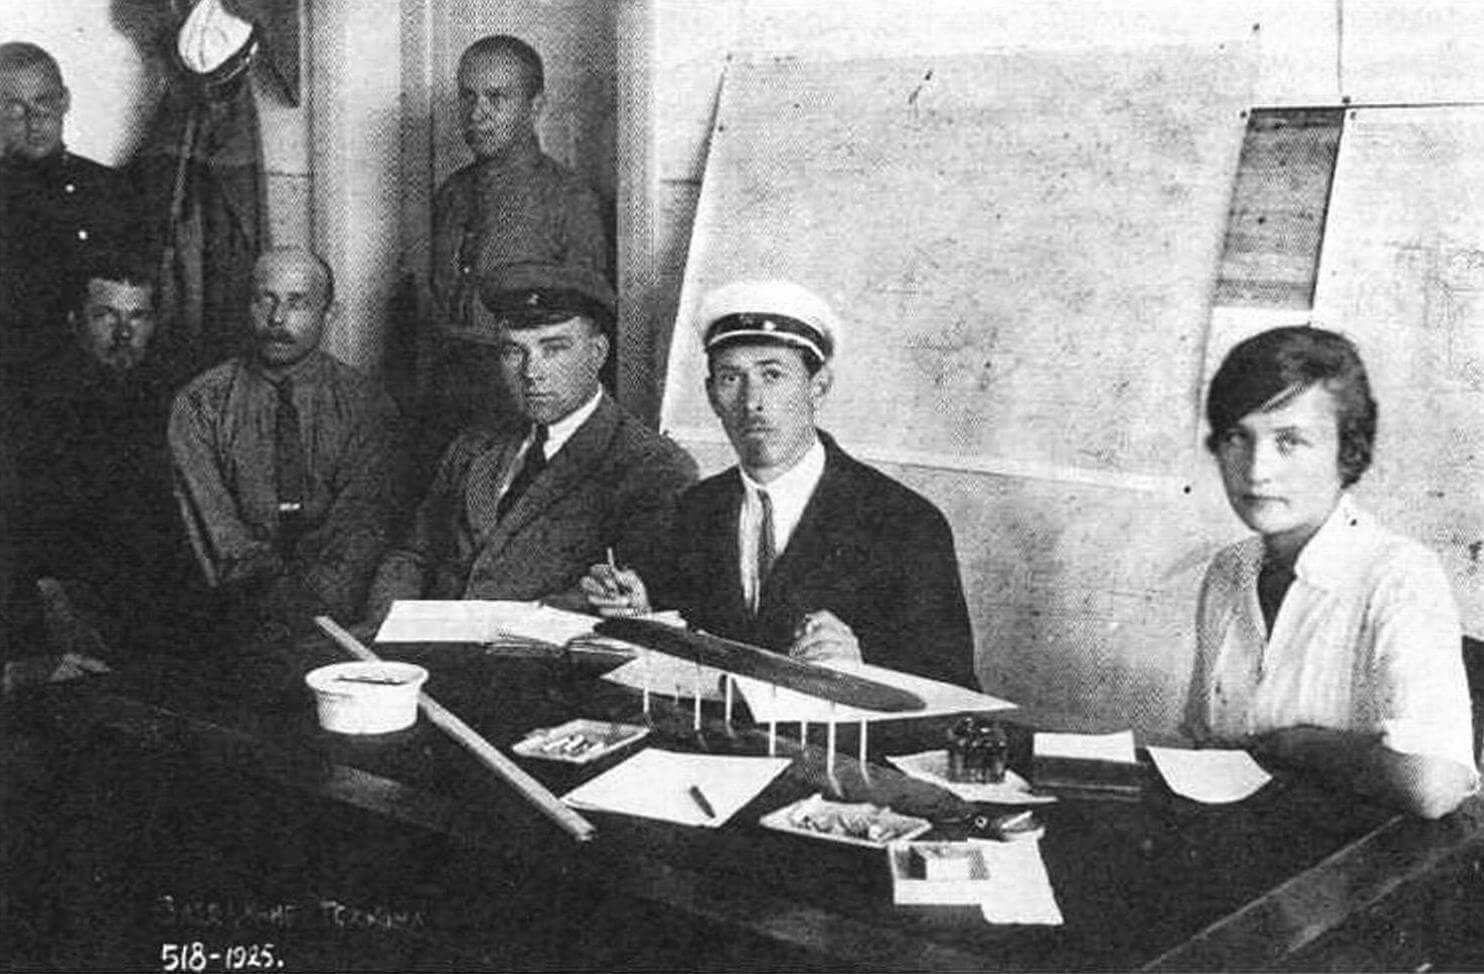 Заседание техническою комитета на ГАЗ №1 в 1925 г. В центре Н.Н. Поликарпов, по его правую руку сидит В.Д. Яровицкий, по левую – И.М. Косткин